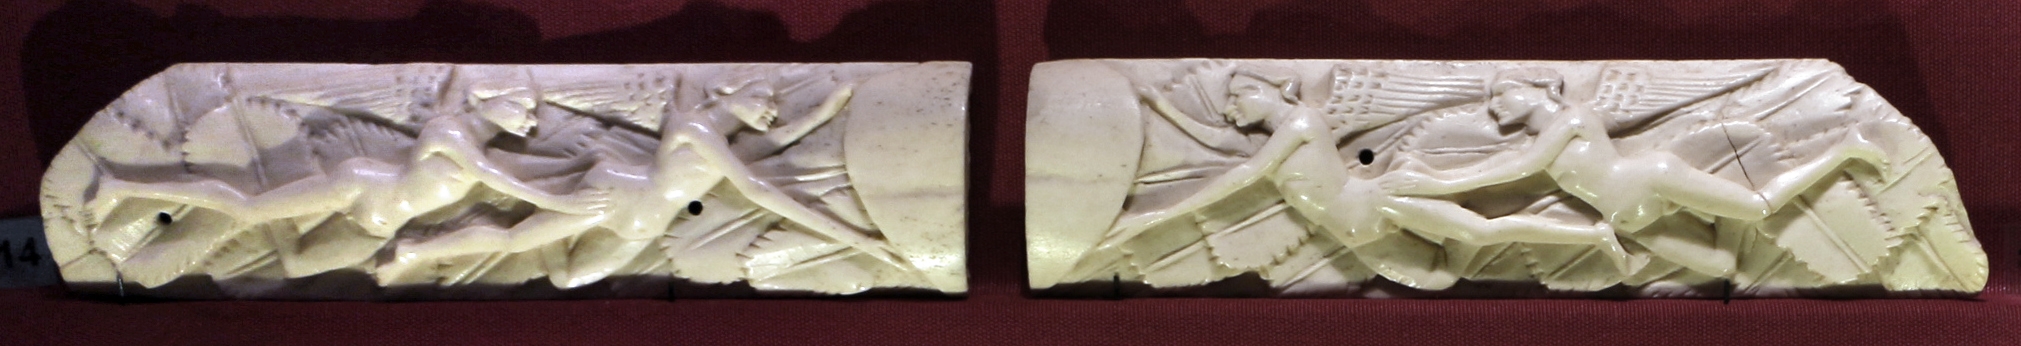 Maniera di baldassarre degli embriachi, due placche da coperchio di cassetta, osso, 1400-1425 ca - Sailko